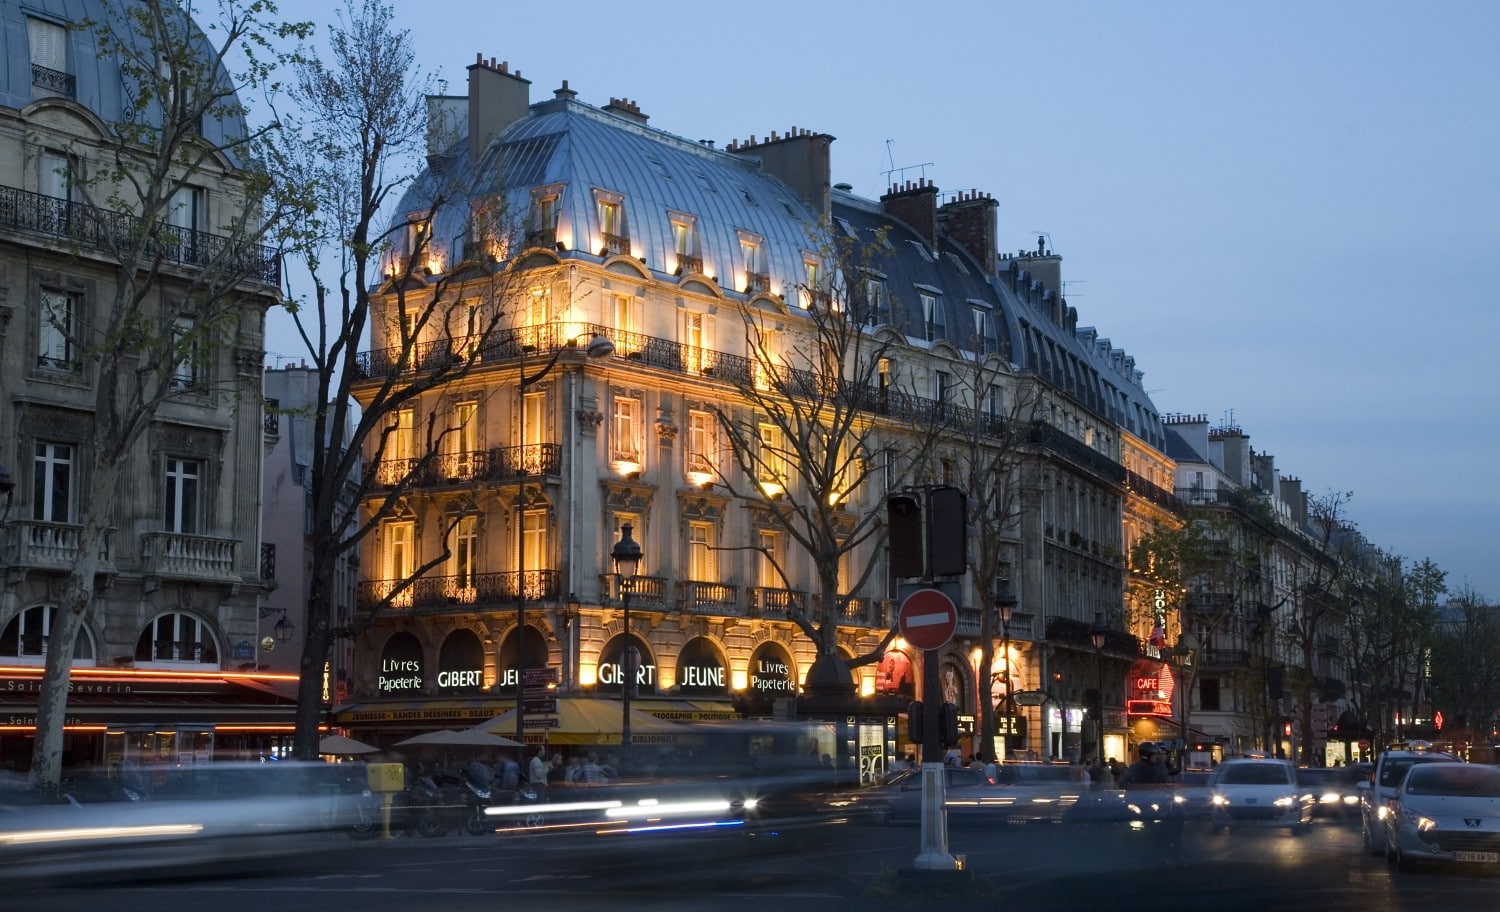 Rive Gauche, Boulevard St Germain, Paris'te bir sokak sahnesi